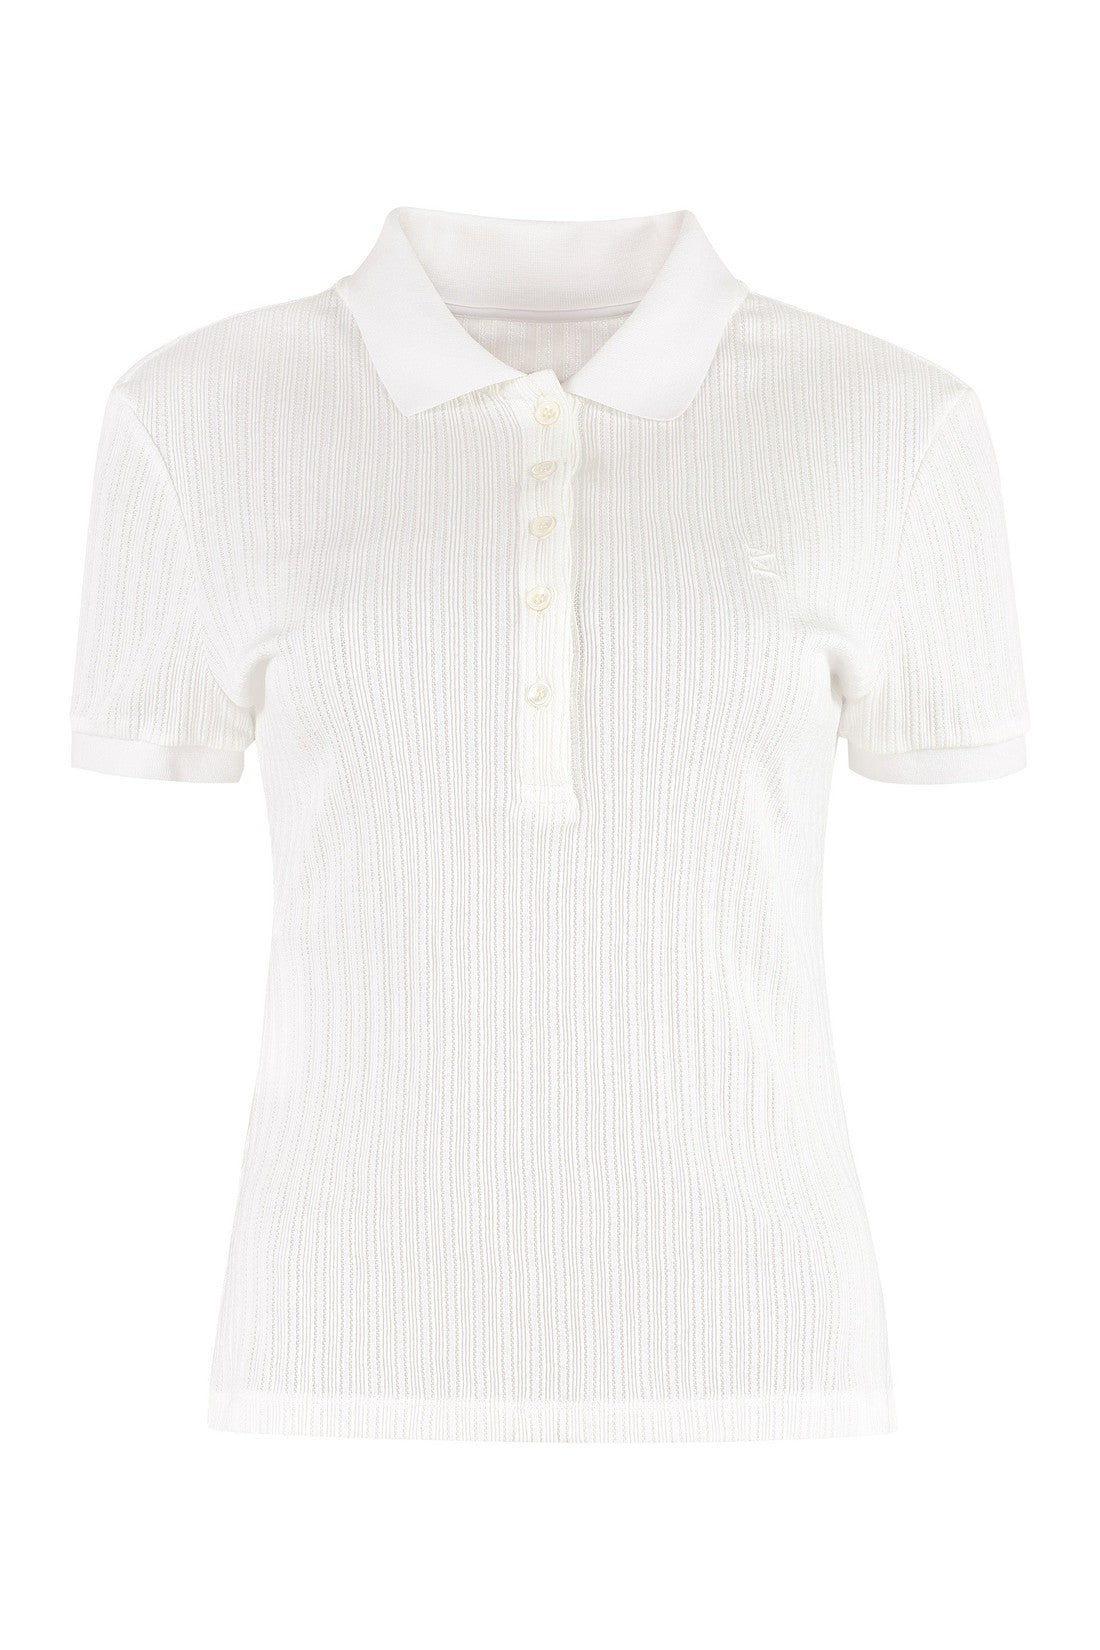 Maison Margiela-OUTLET-SALE-Short sleeve cotton polo shirt-ARCHIVIST